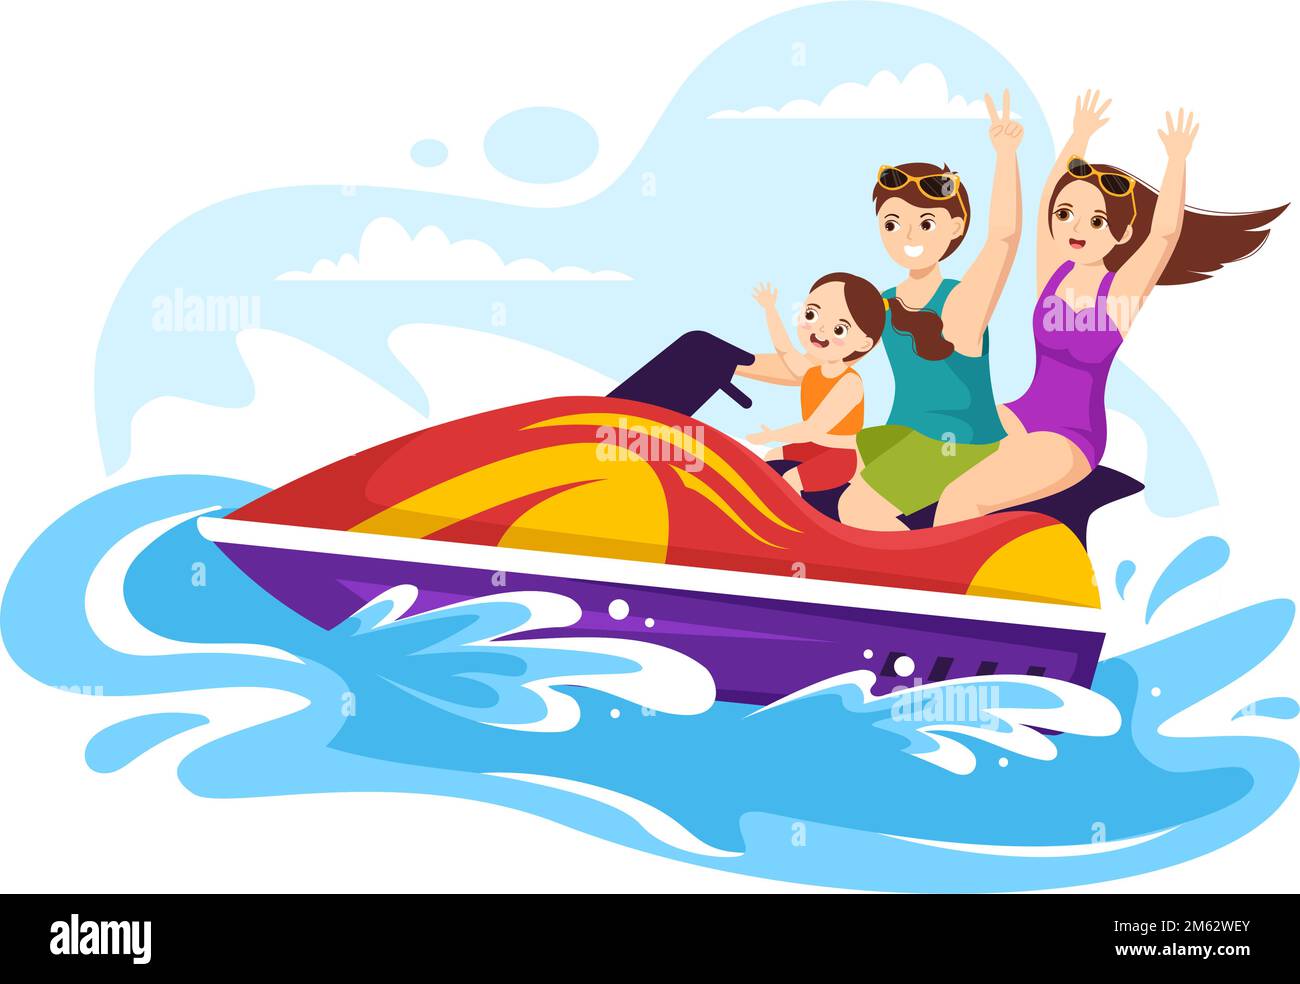 Kinder fahren Jet Ski Illustration Sommerurlaub Erholung, Extreme Wassersport und Resort Strandaktivität in Hand Drawn Flat Cartoon Vorlage Stock Vektor